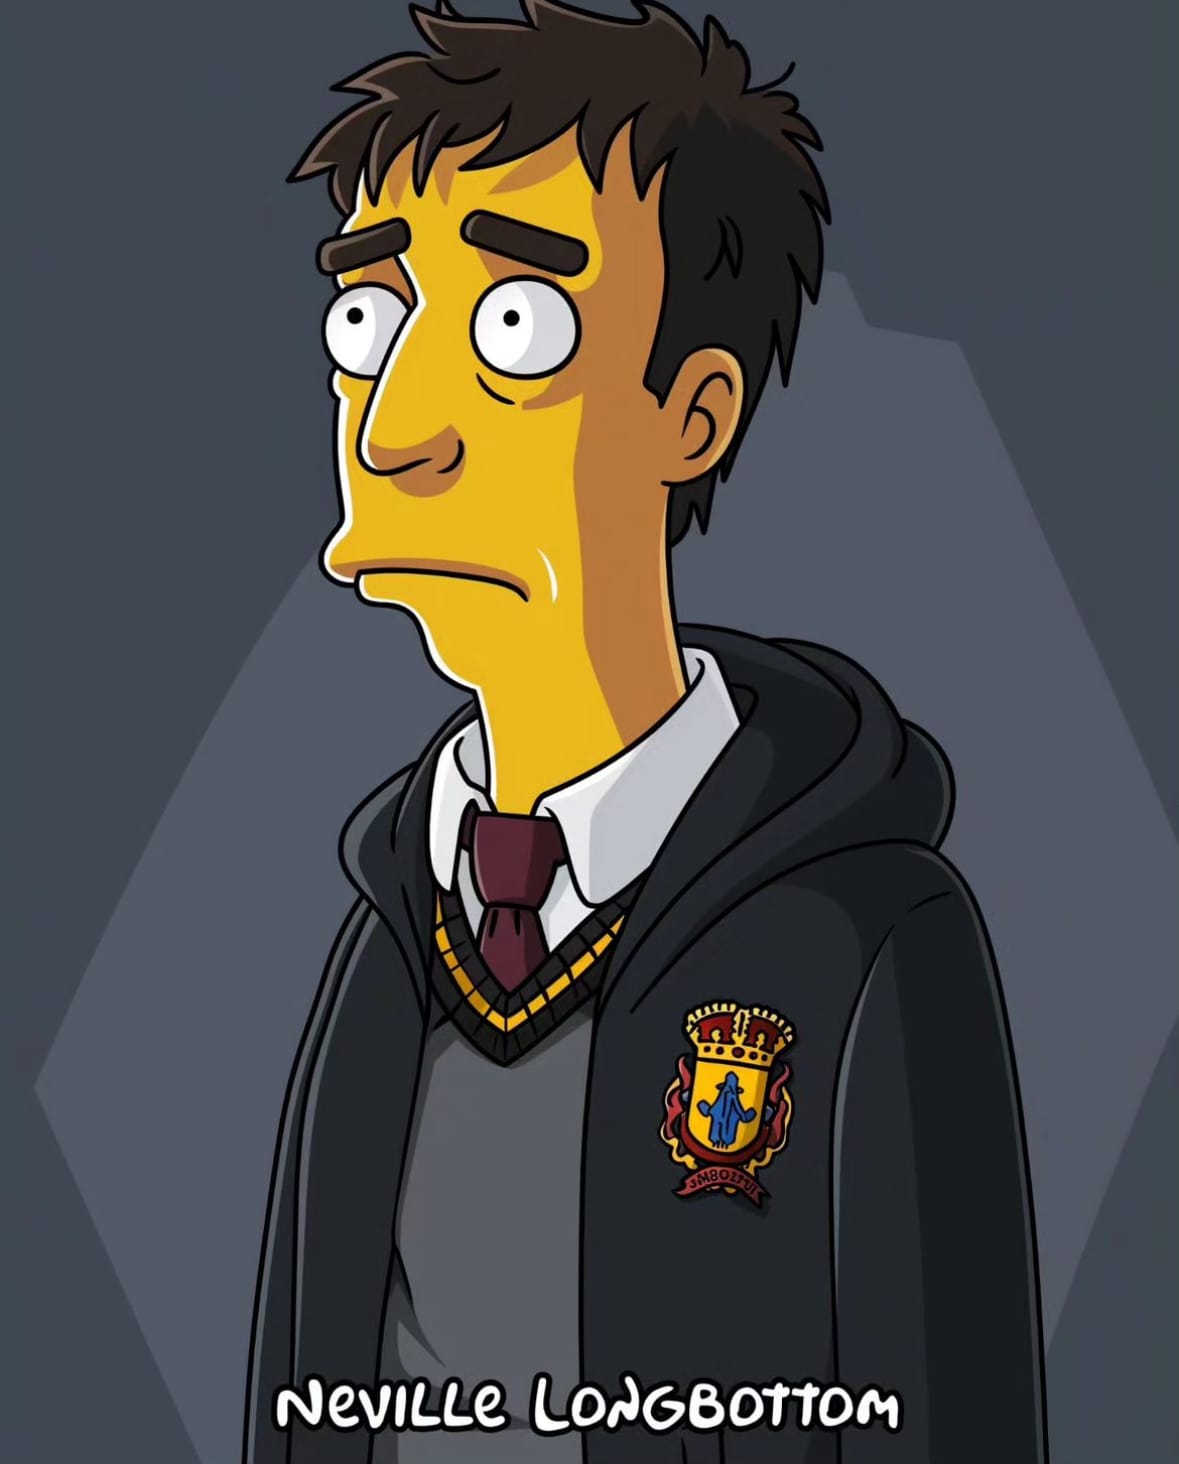 ตัวละคร แฮร์รี่ พอตเตอร์ เวอร์ชั่นการ์ตูน The Simpsons